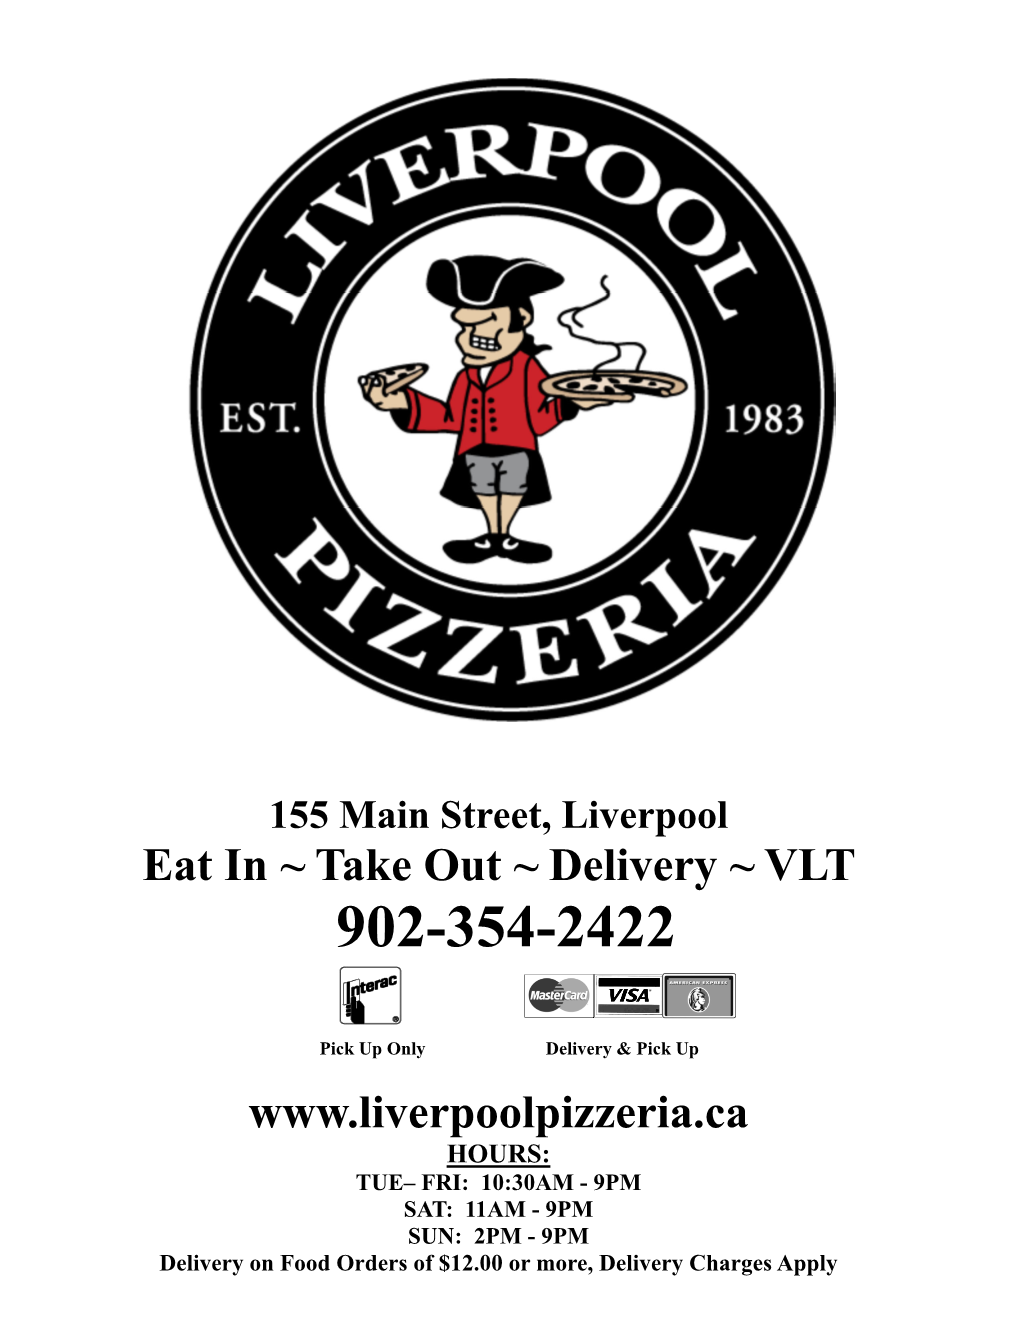 Liverpool Pizzeria Menu 2017